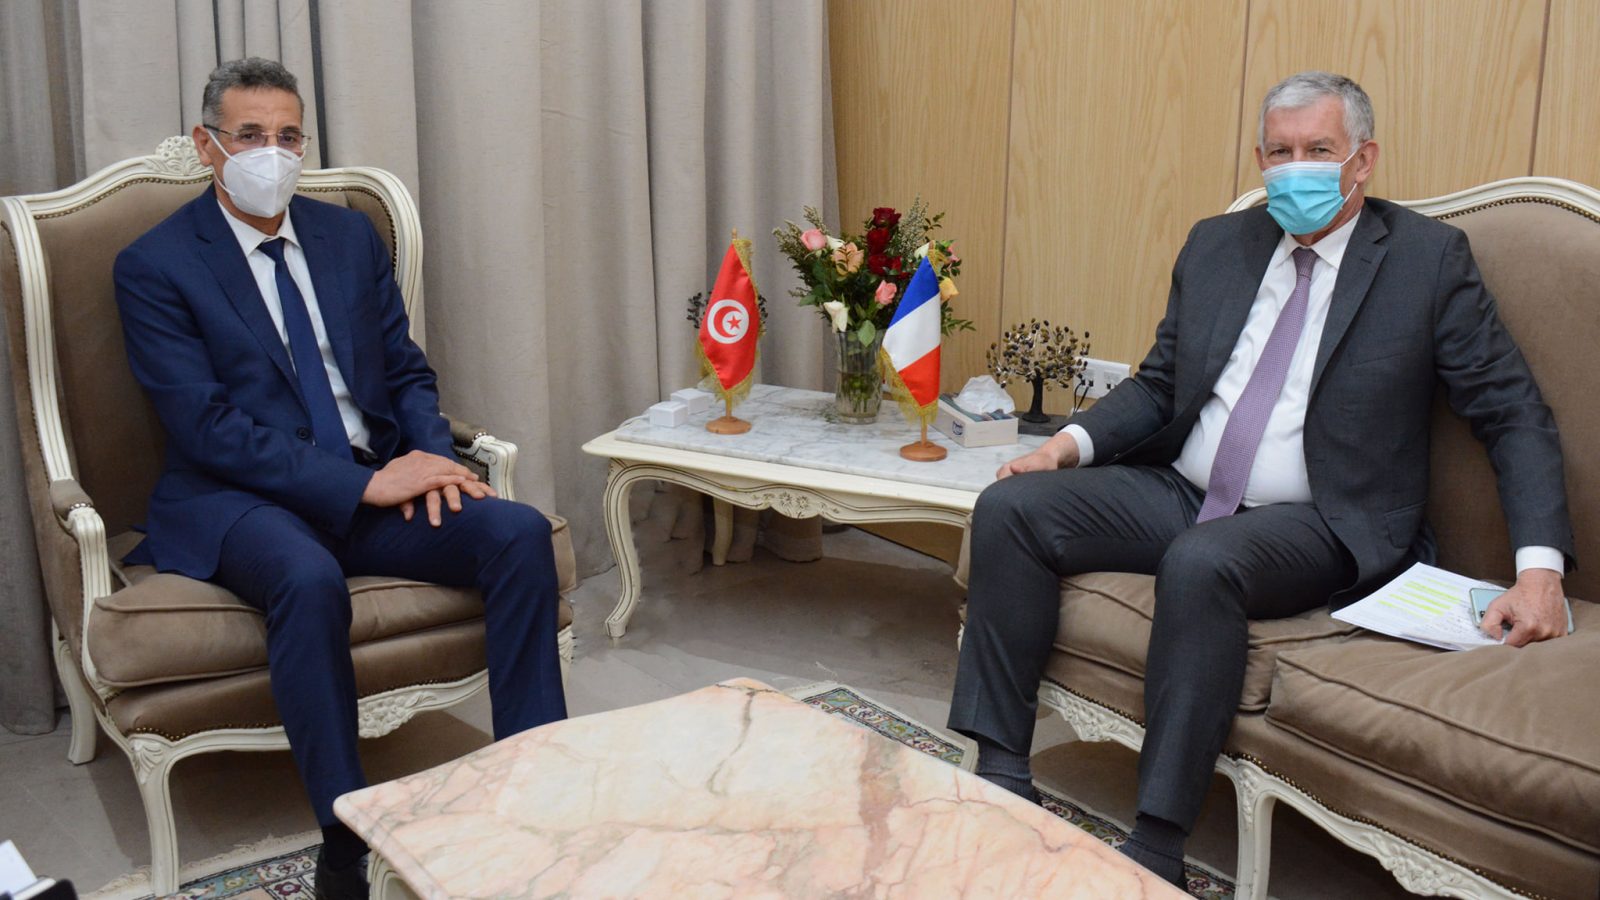 إعادة تفعيل اللّجنة الأمنيّة المشتركة محور لقاء وزير الداخلية بالسفير الفرنسي